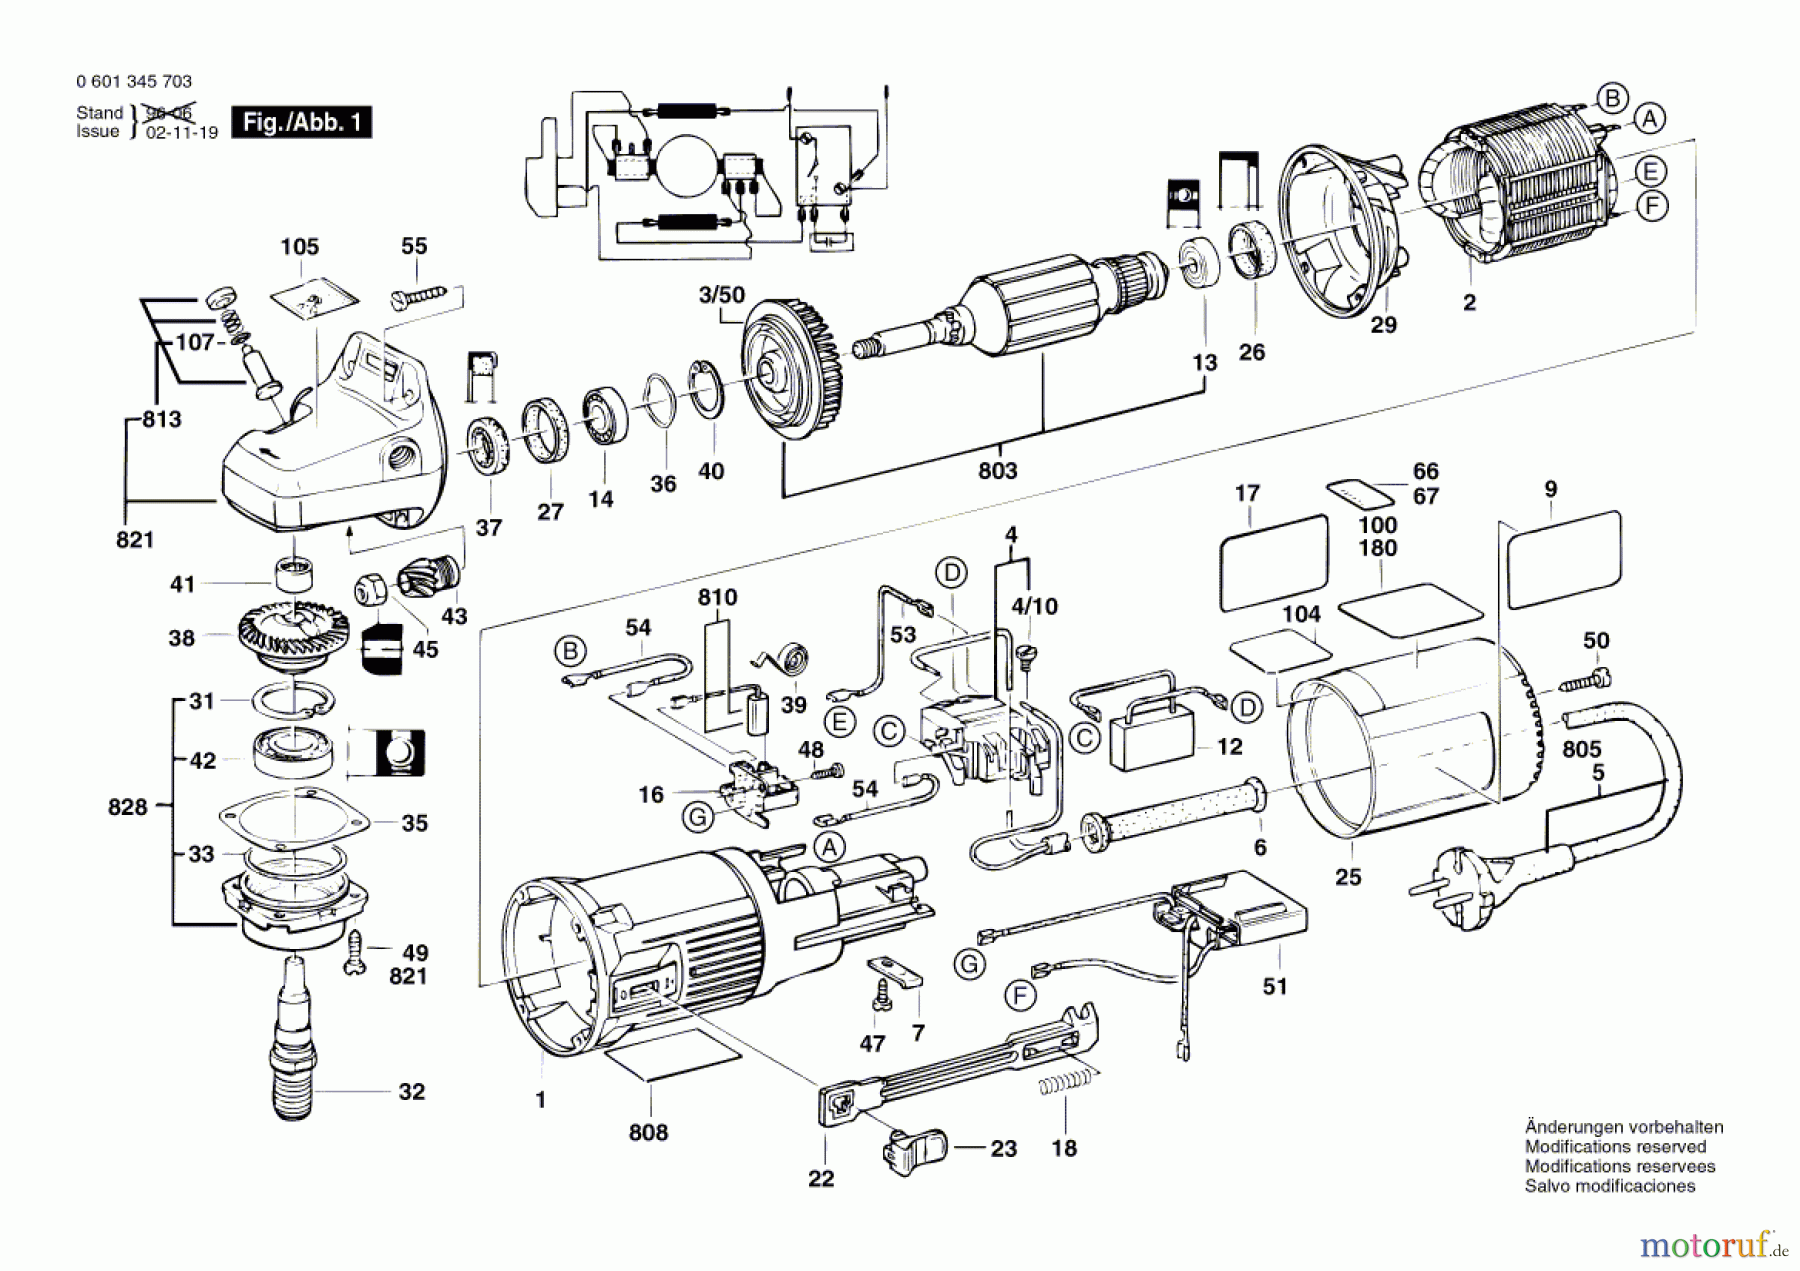  Bosch Werkzeug Winkelschleifer GWS 9-150 C Seite 1